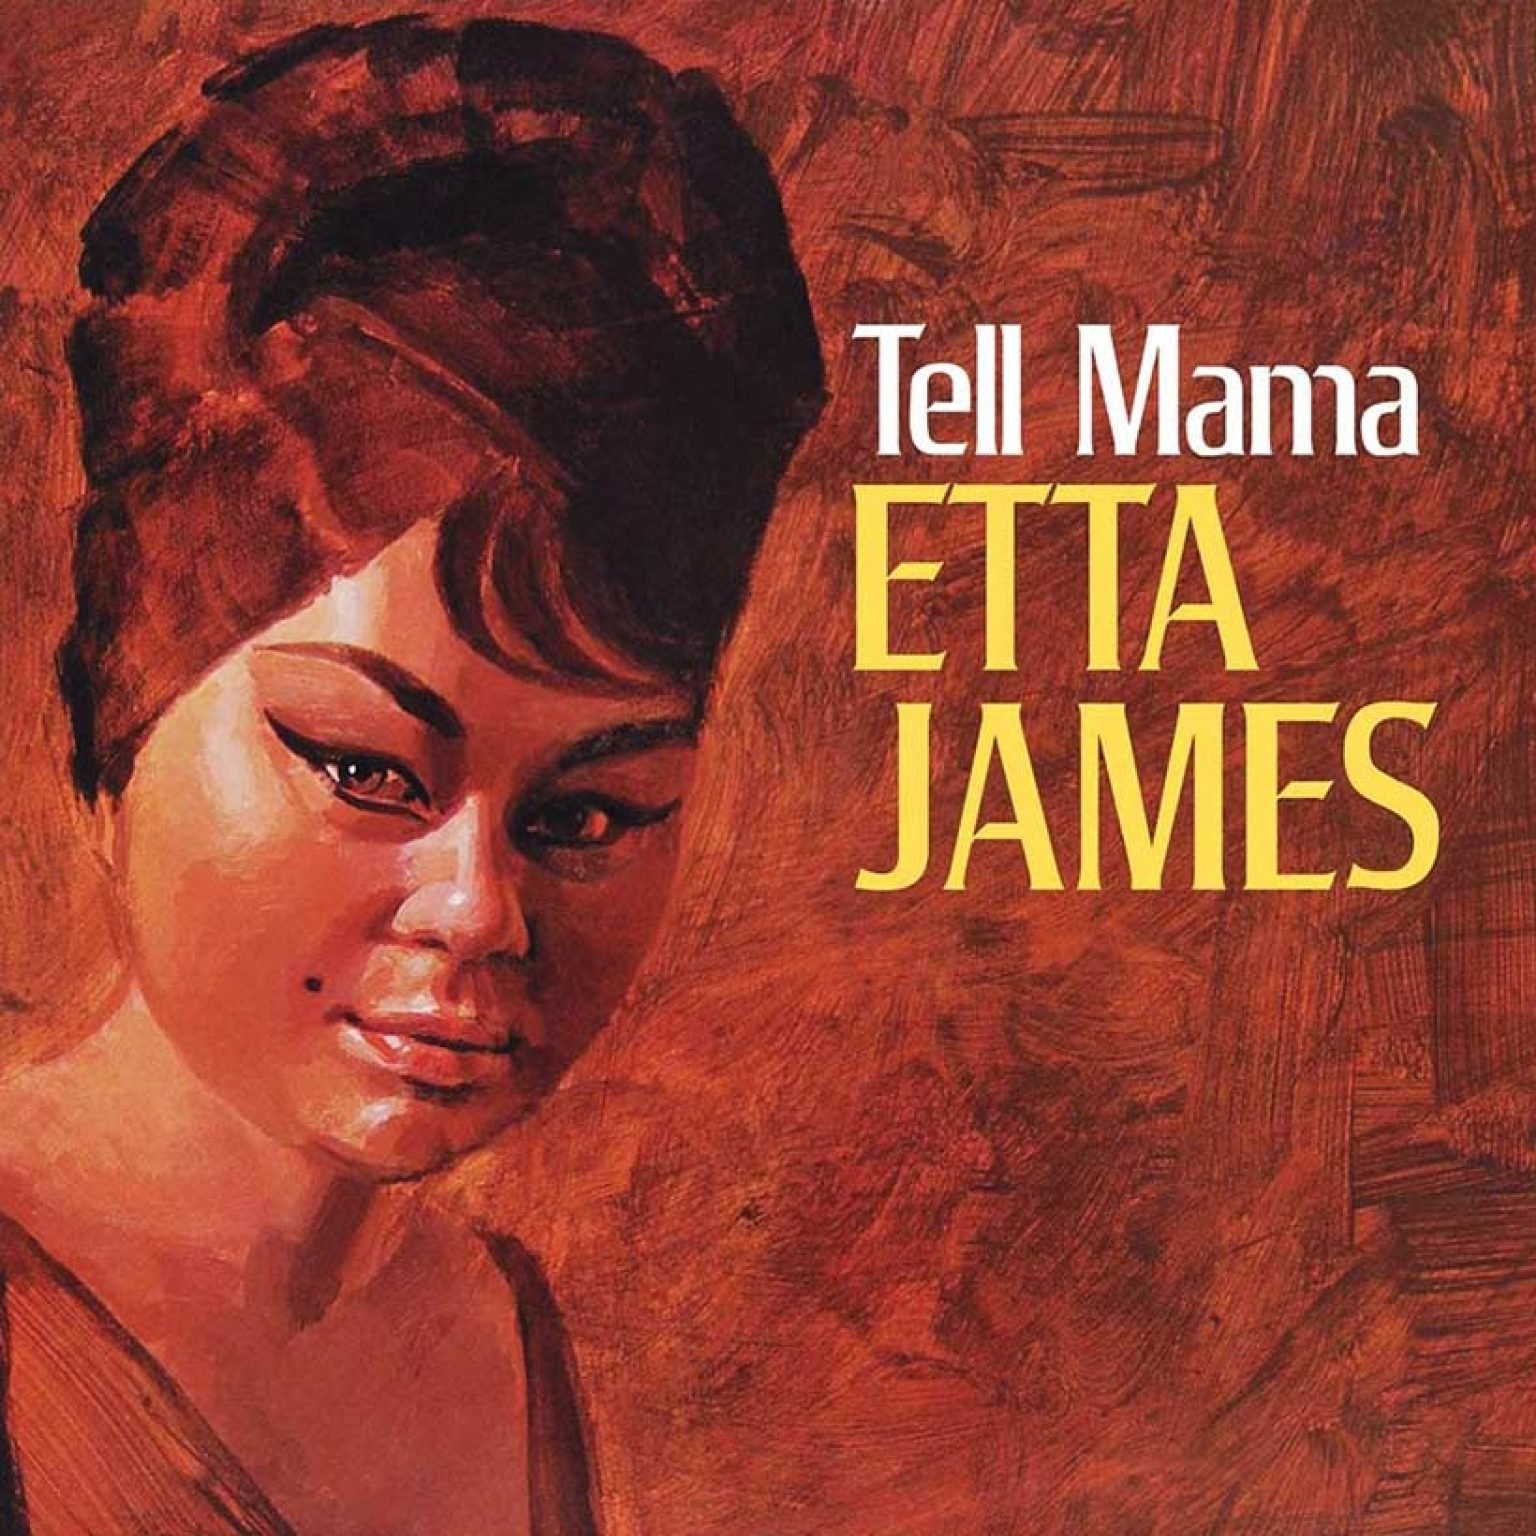 Etta-James-Tell-Mama-Album-Cover-web-820-optimised-1536x1536.jpg